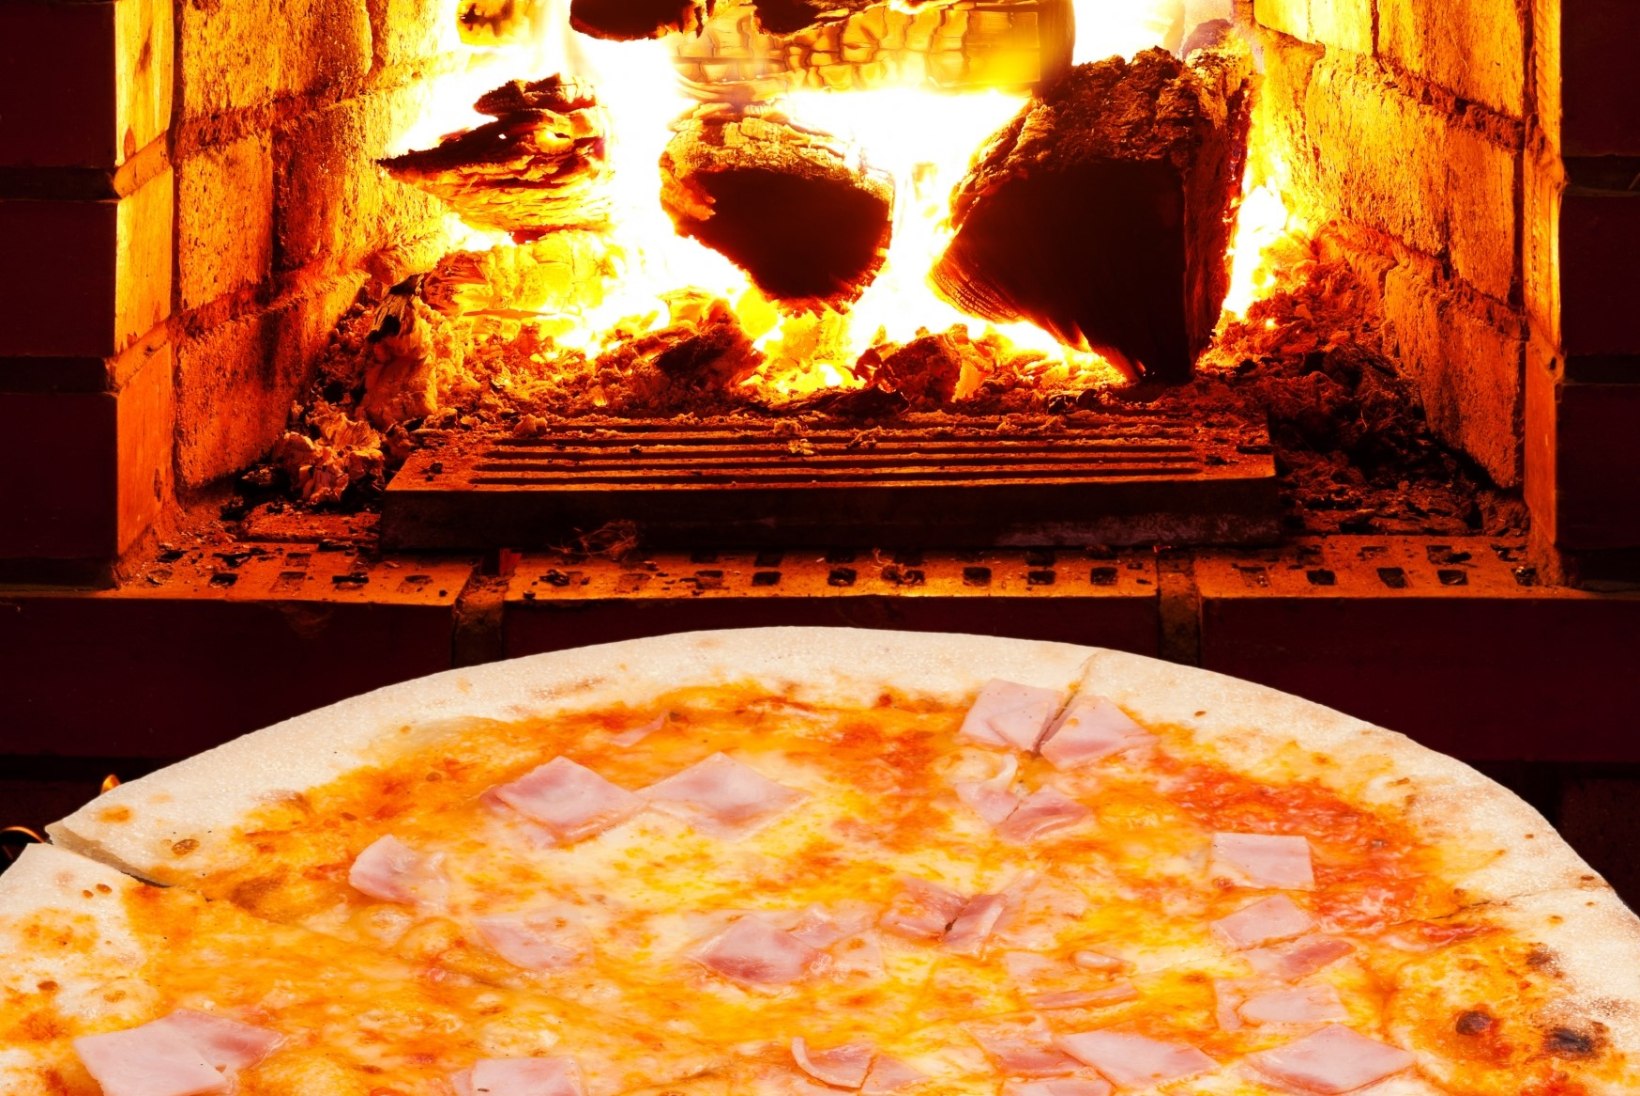 KUIDAS KOHELDA ÕIGESTI MEHE PARIMAT SÕPRA ehk Milline on parim meetod pitsa soojendamiseks?